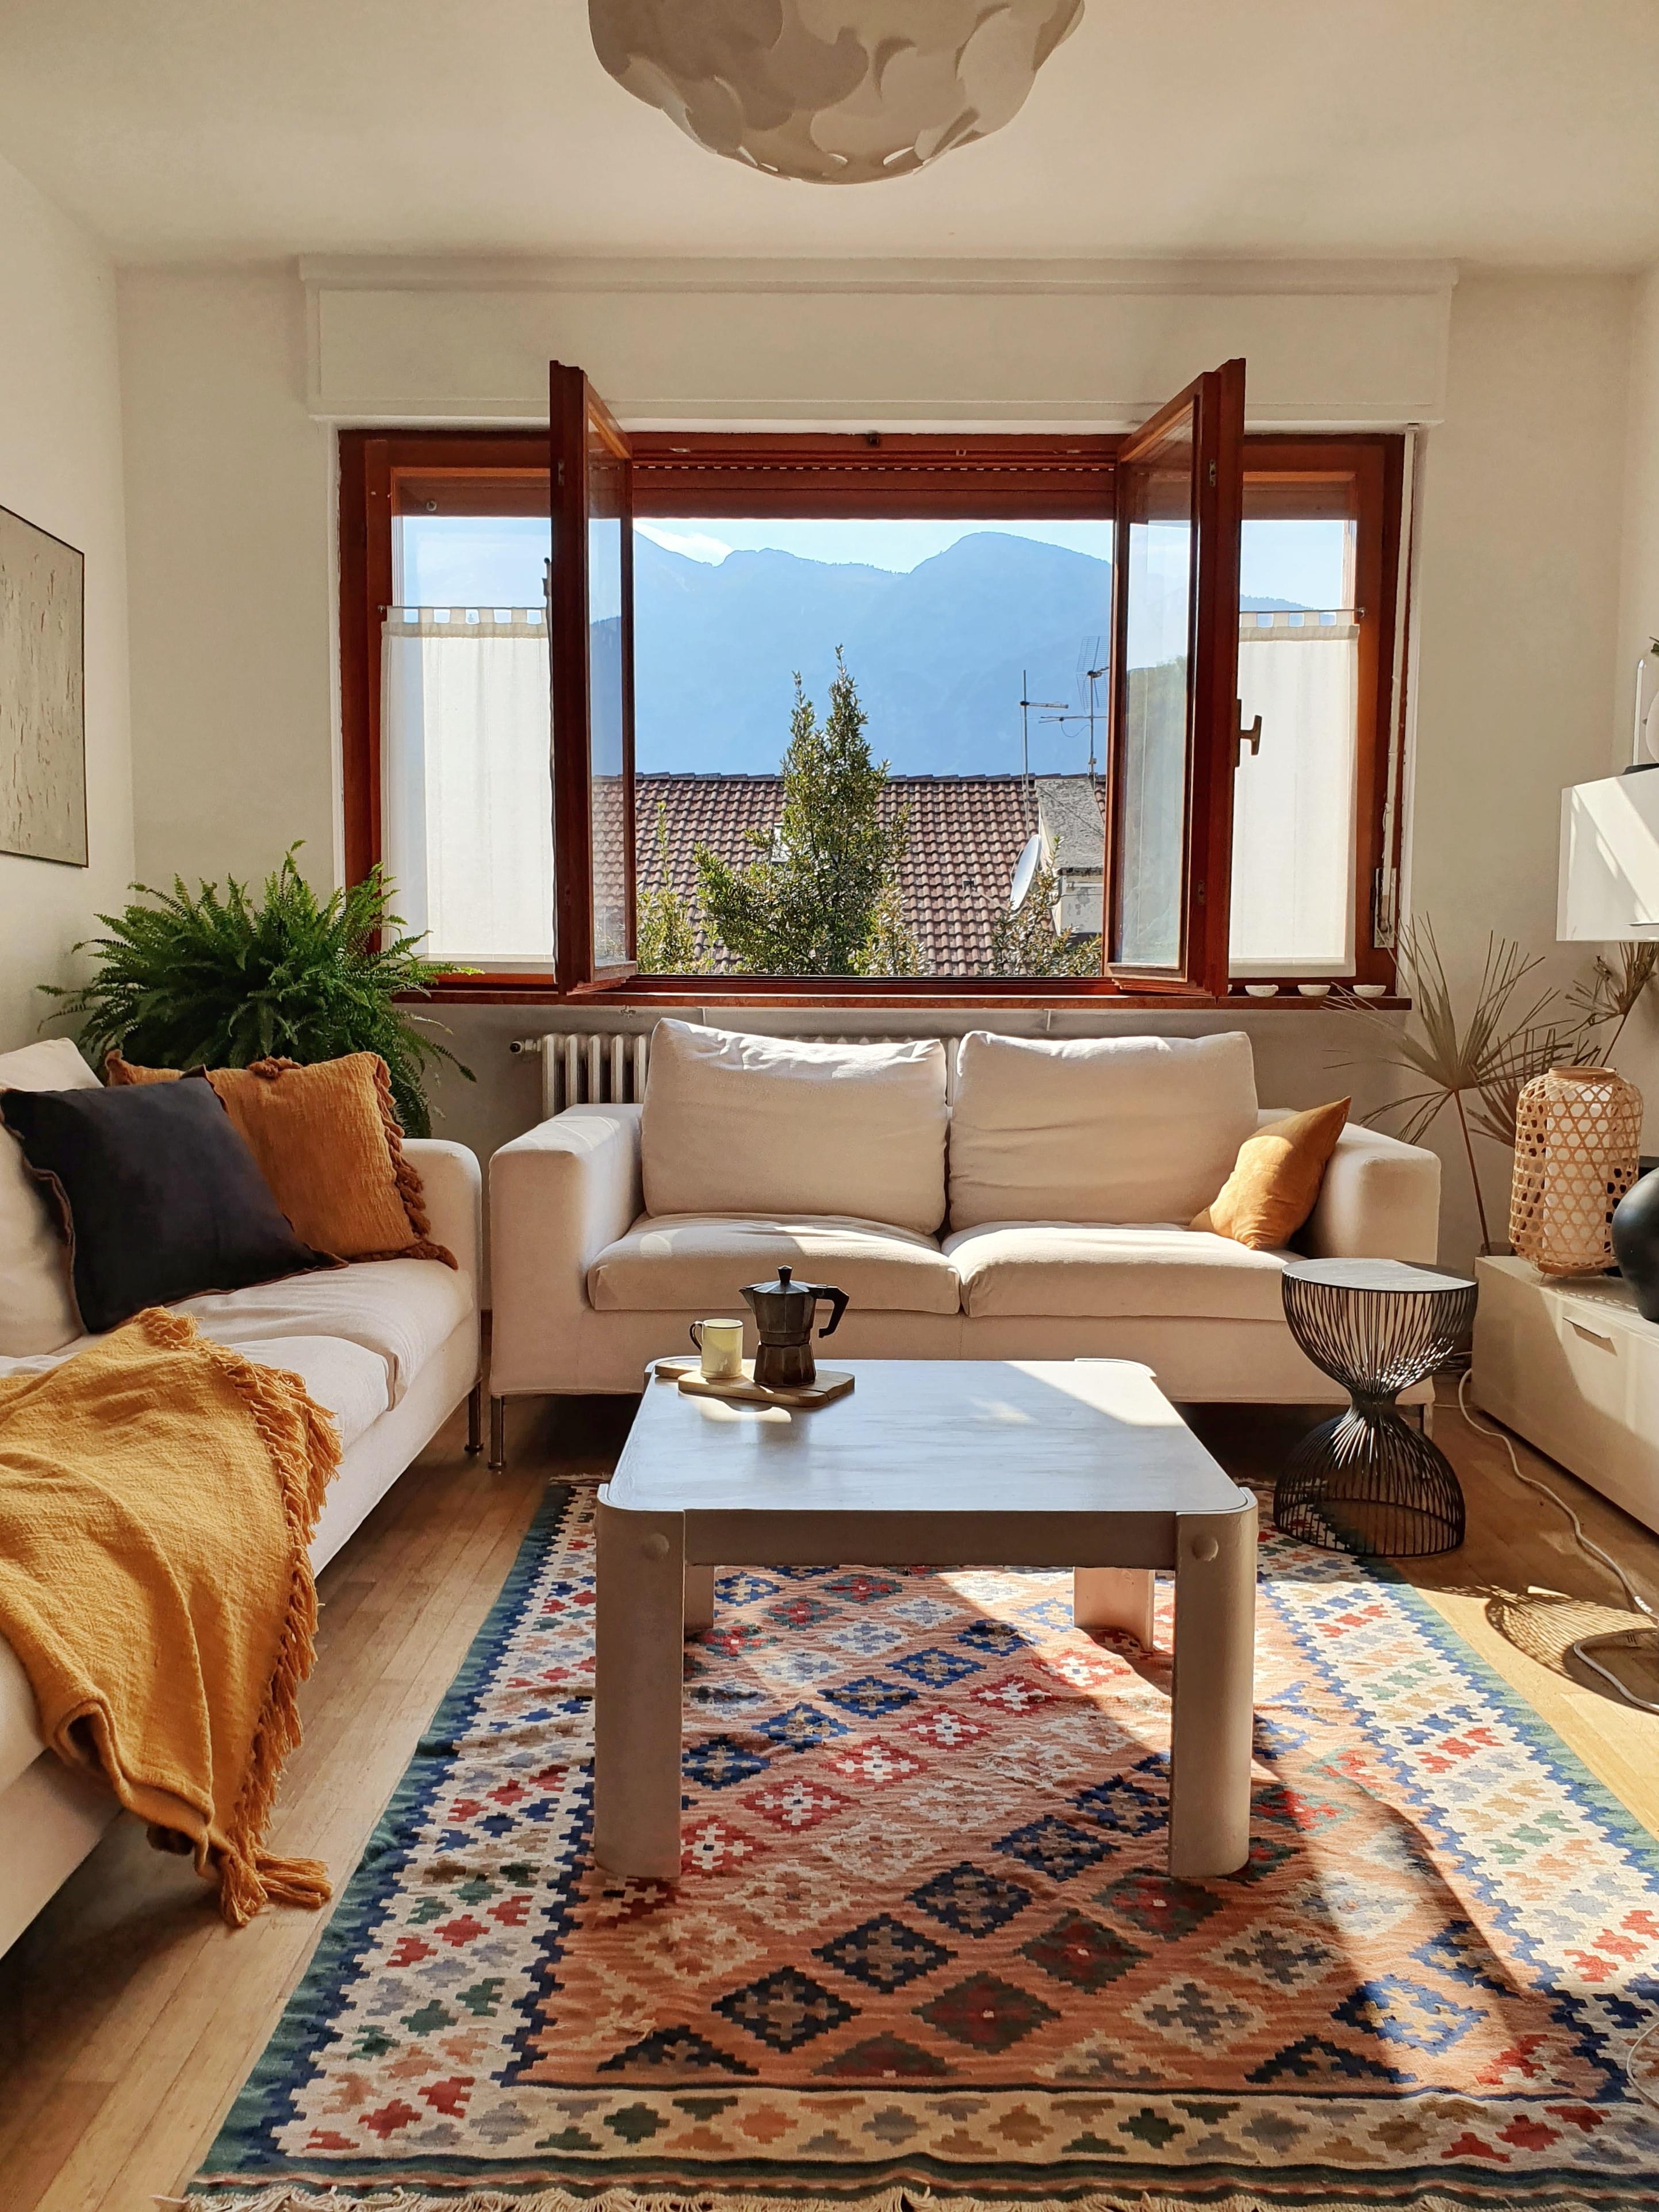 Unsere neuen second hand Pietro Lissoni Living Divani Sofas #interior #wohnzimmer #zuhausesein #altbauliebe #couchstyle 